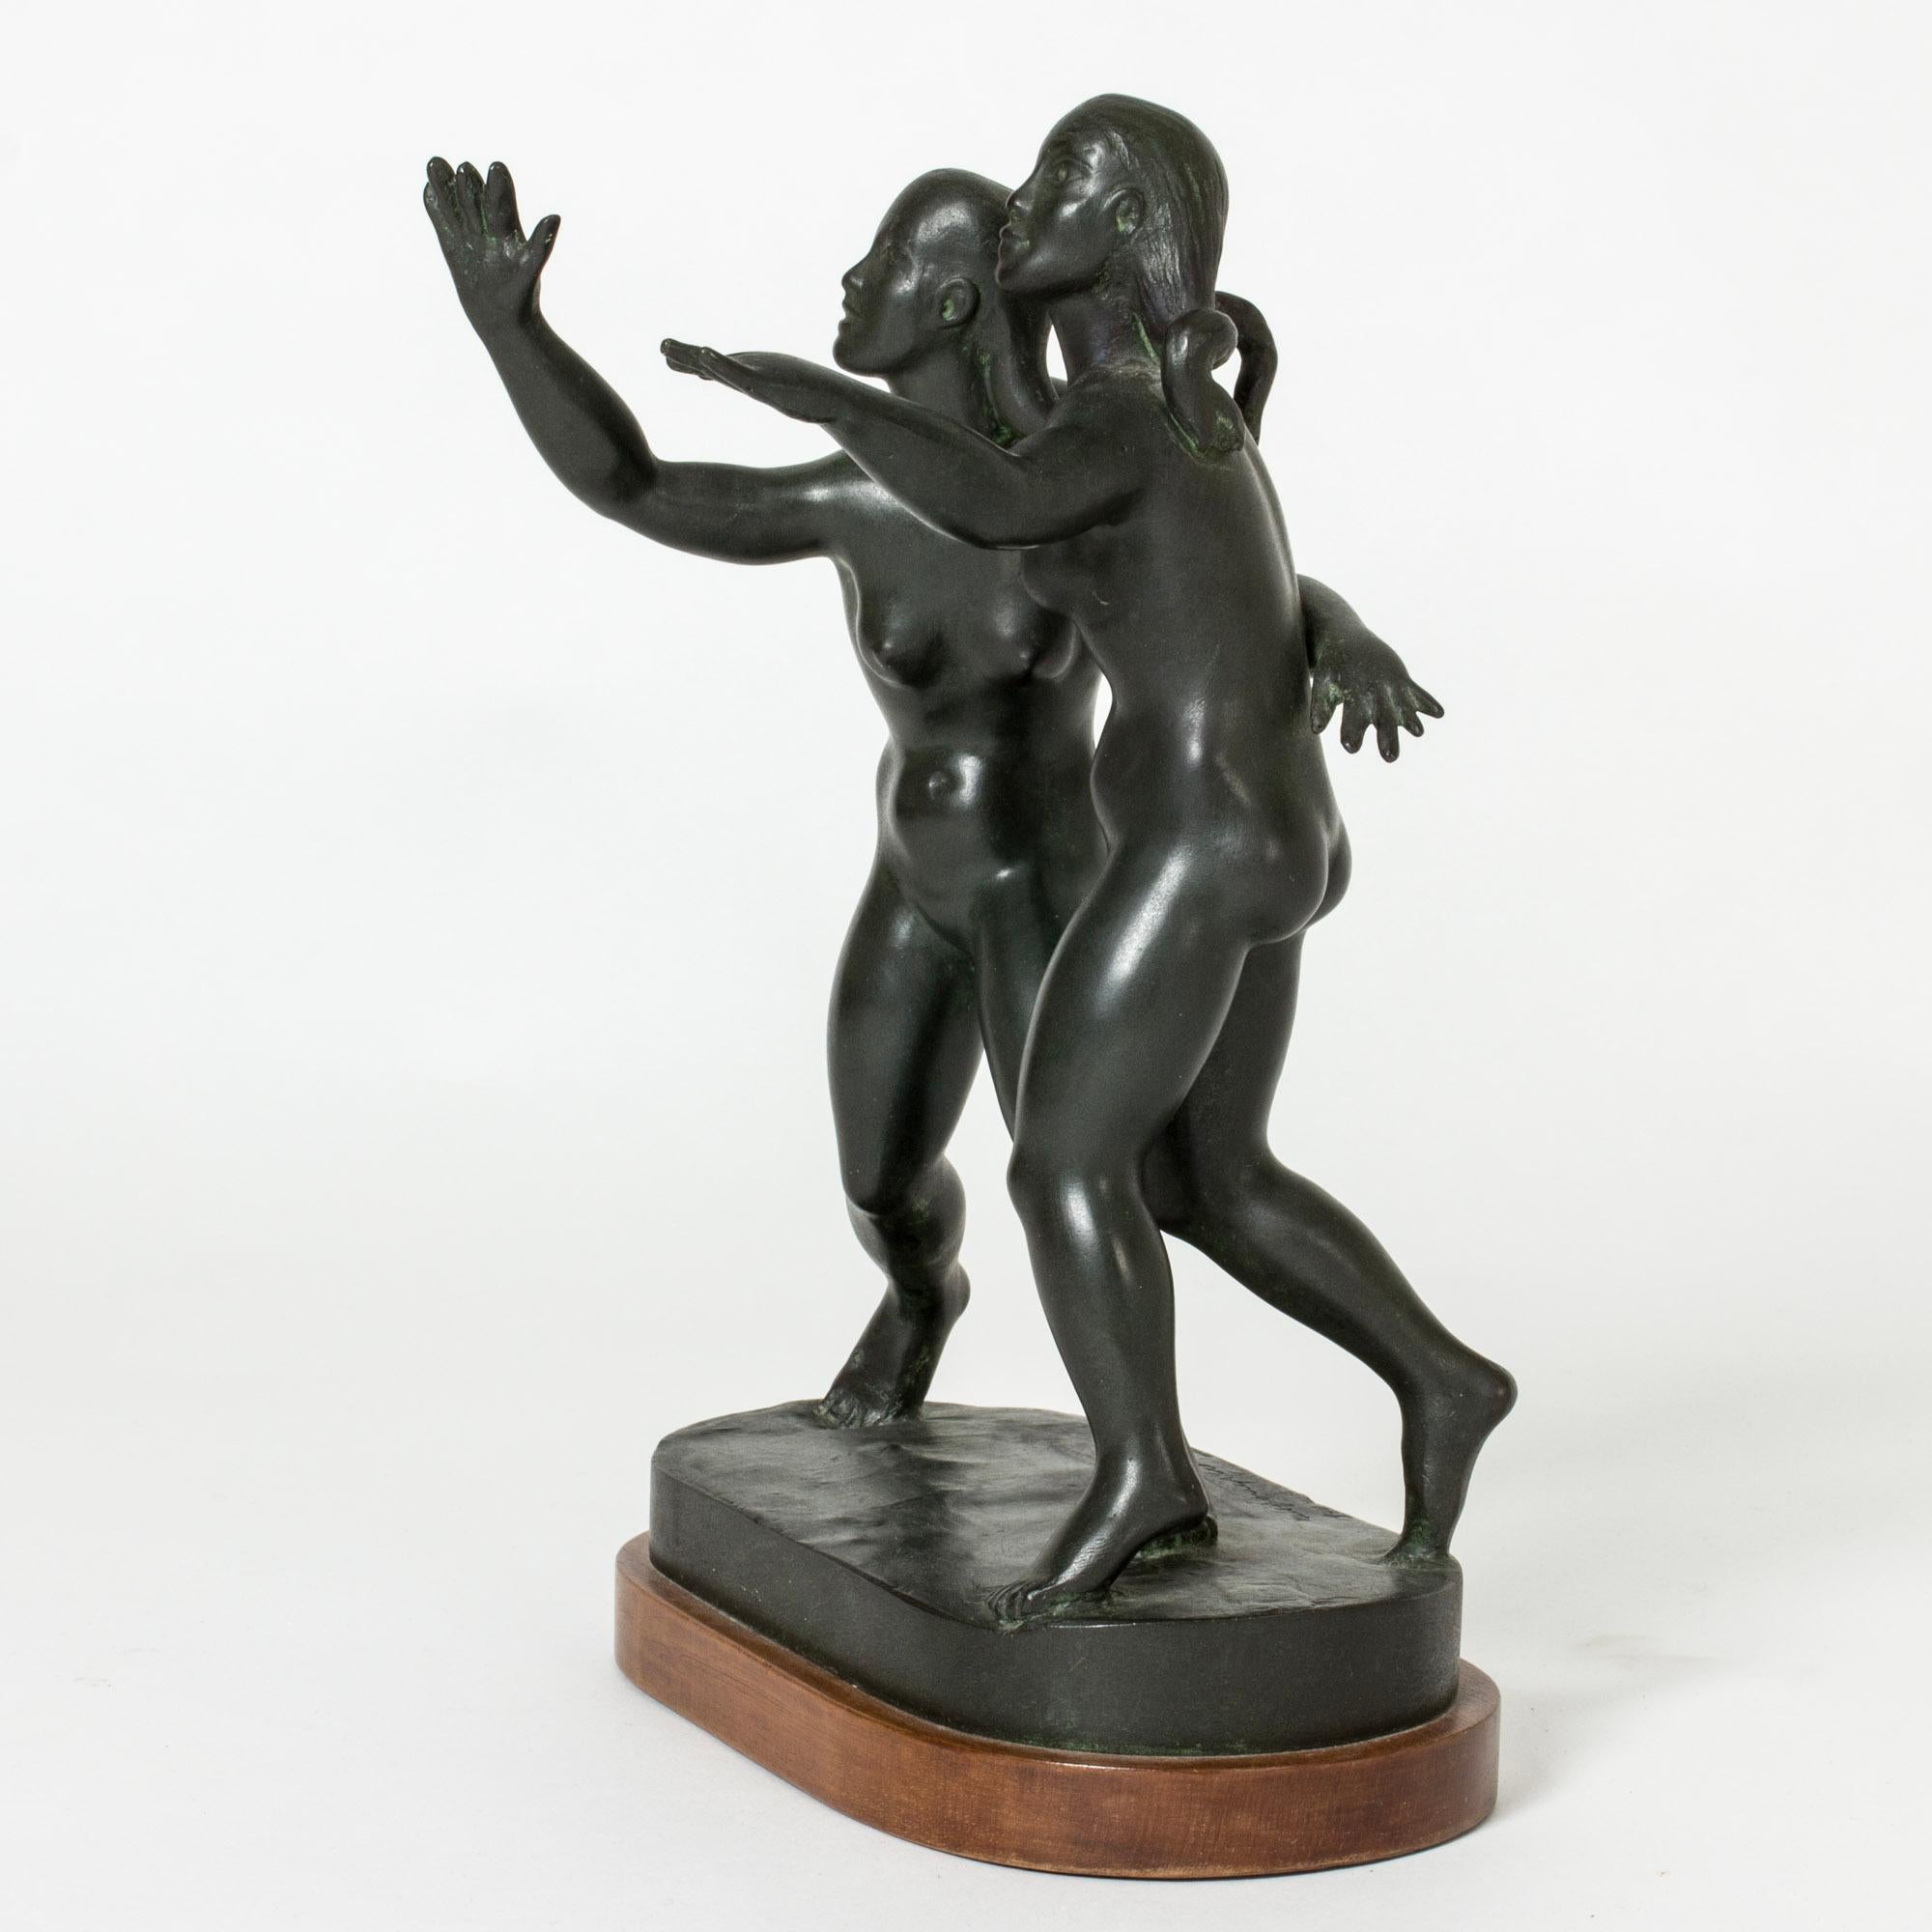 Belle figurine en bronze de Nils Fougstedt, en forme de deux jeunes femmes. Les femmes tendent les bras et ont le visage tourné vers le haut. Une belle attention aux détails, une expression pleine de vivacité.